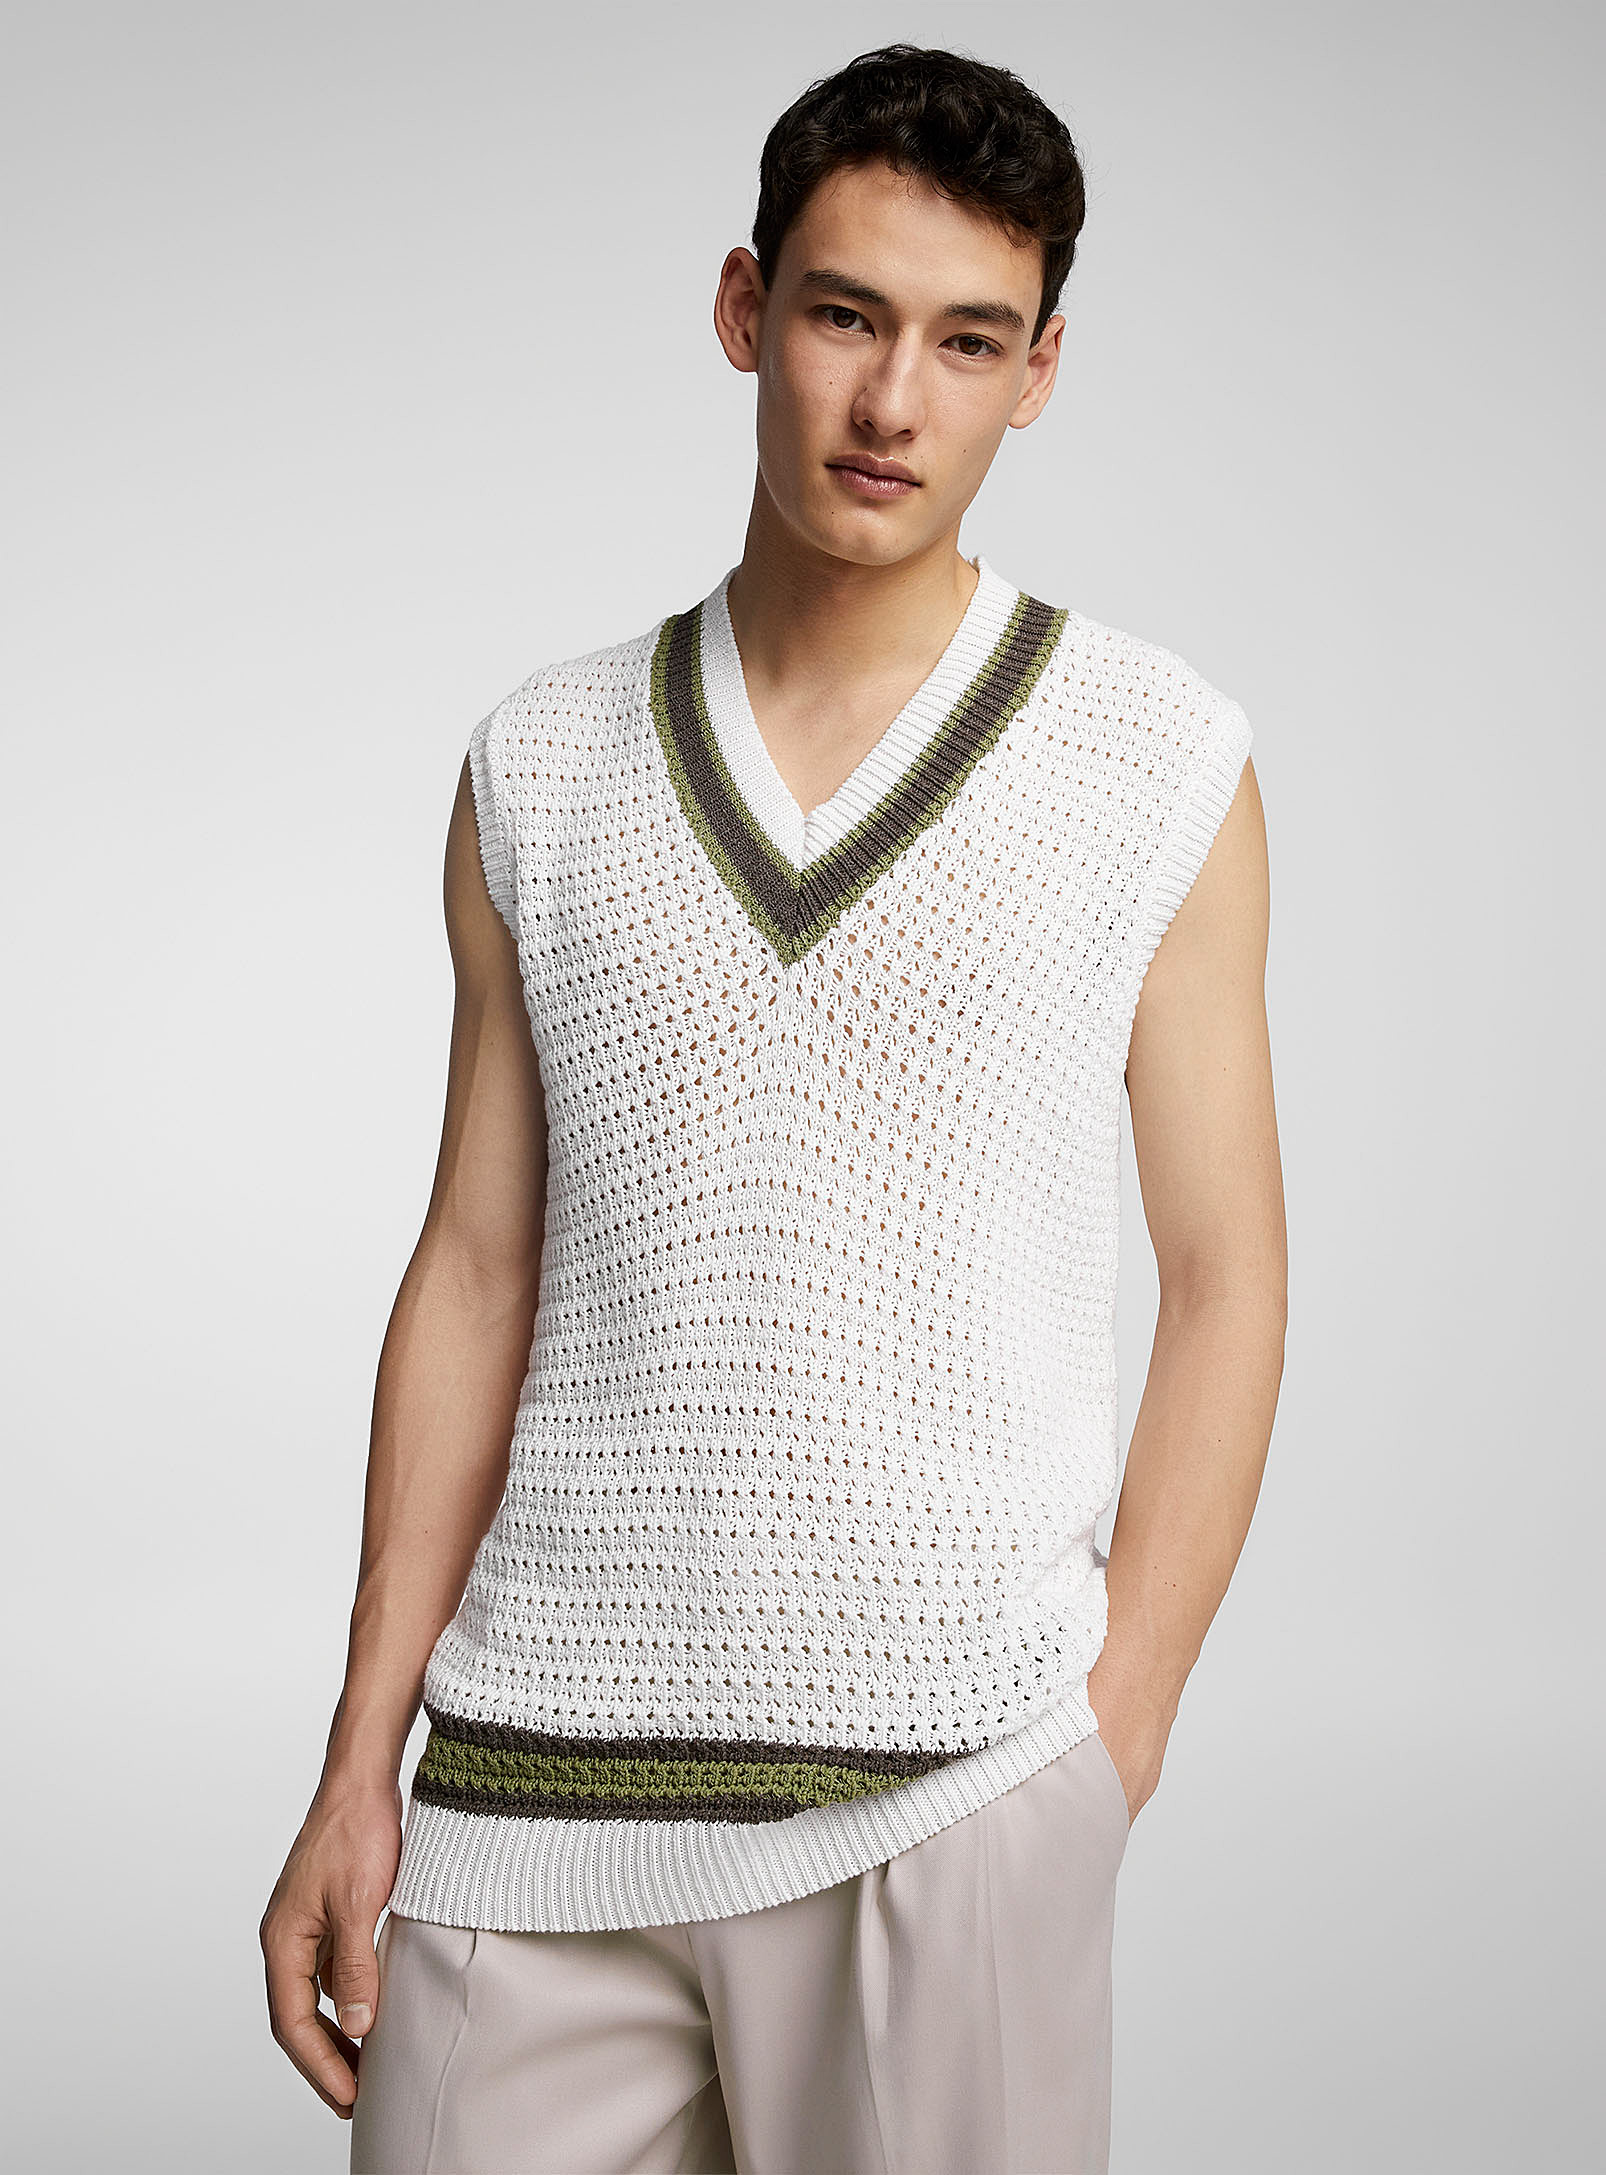 Imperial - Men's Varsity crochet sweater vest